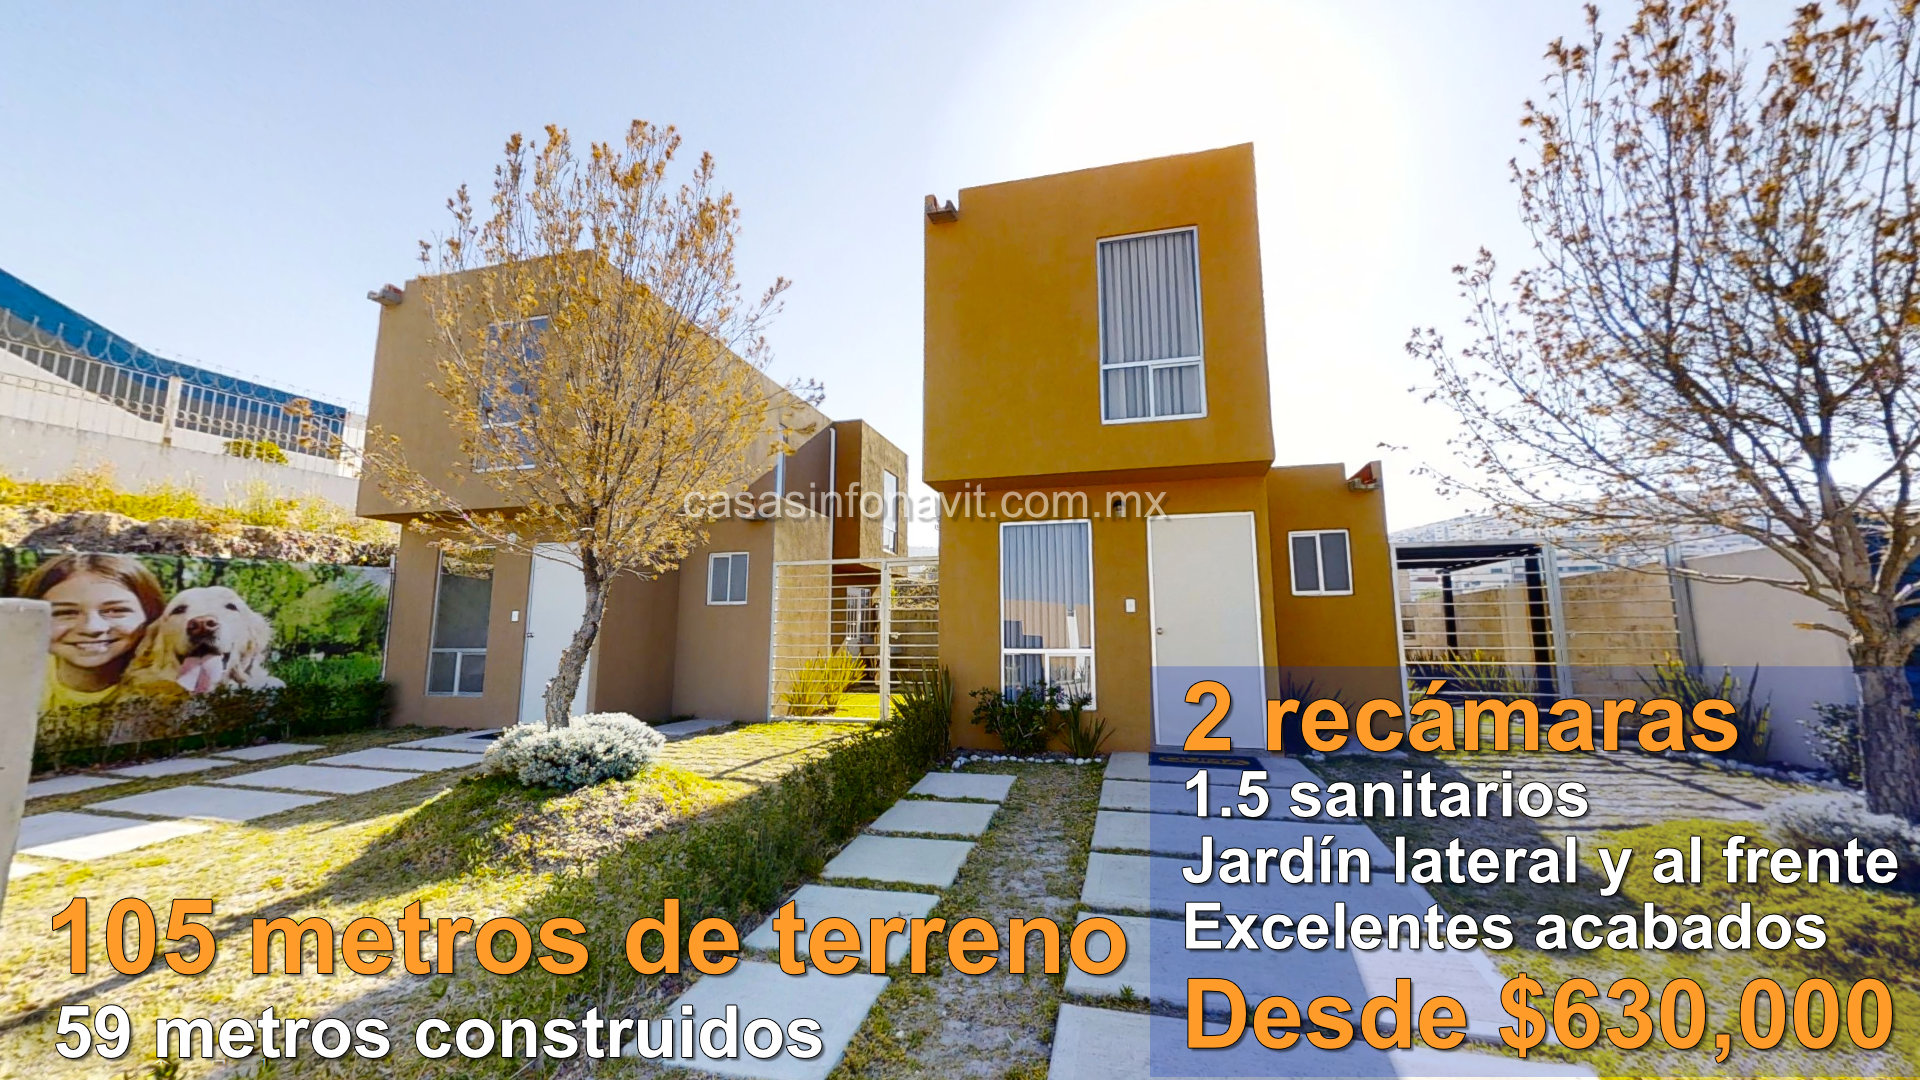 Casas en Puebla Infonavit - Casas en venta con crédito Infonavit